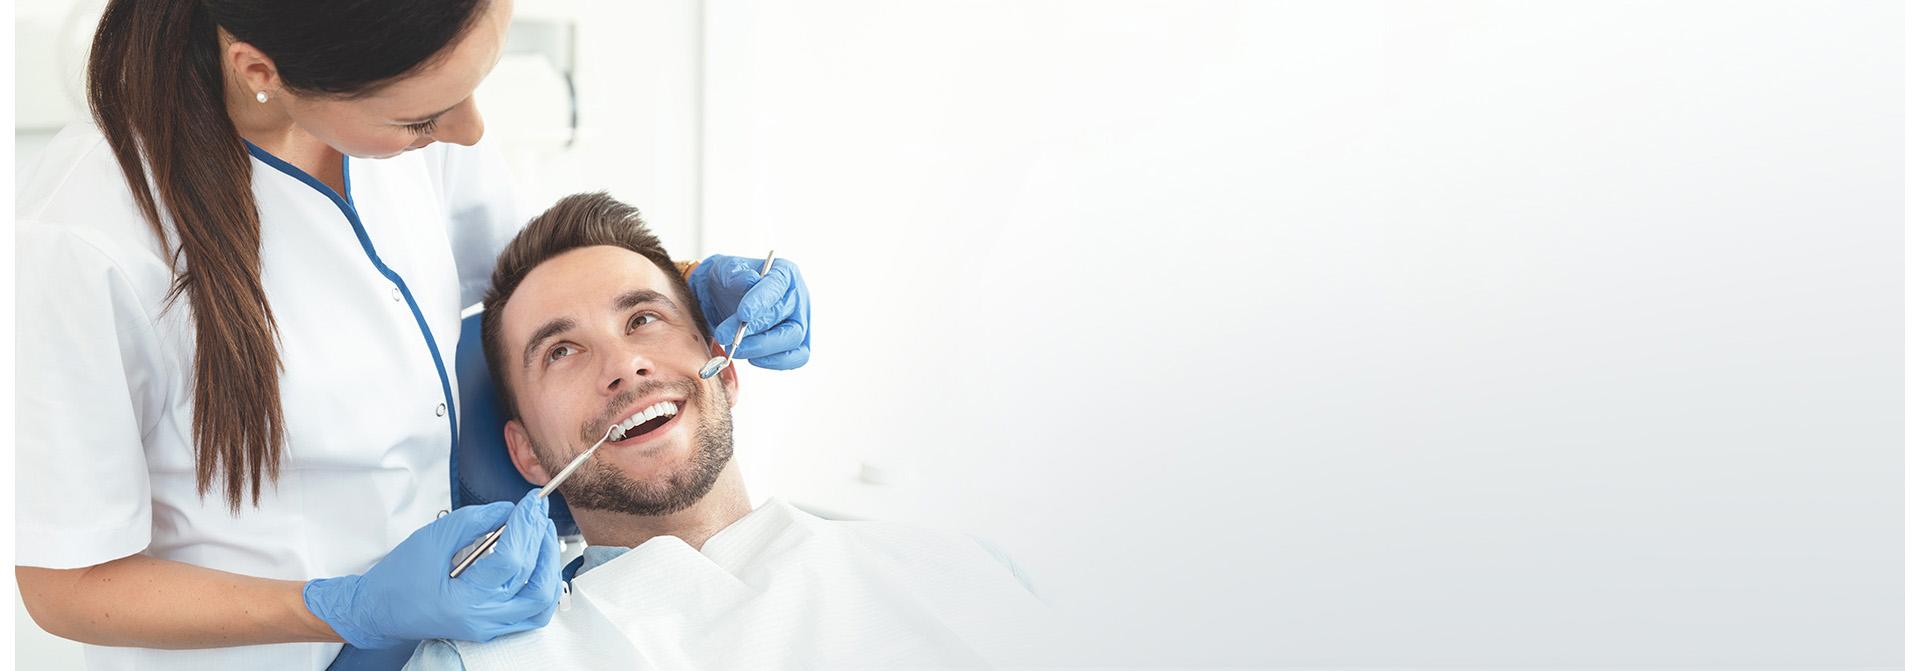 Slajd #1 - dentysta i pacjent